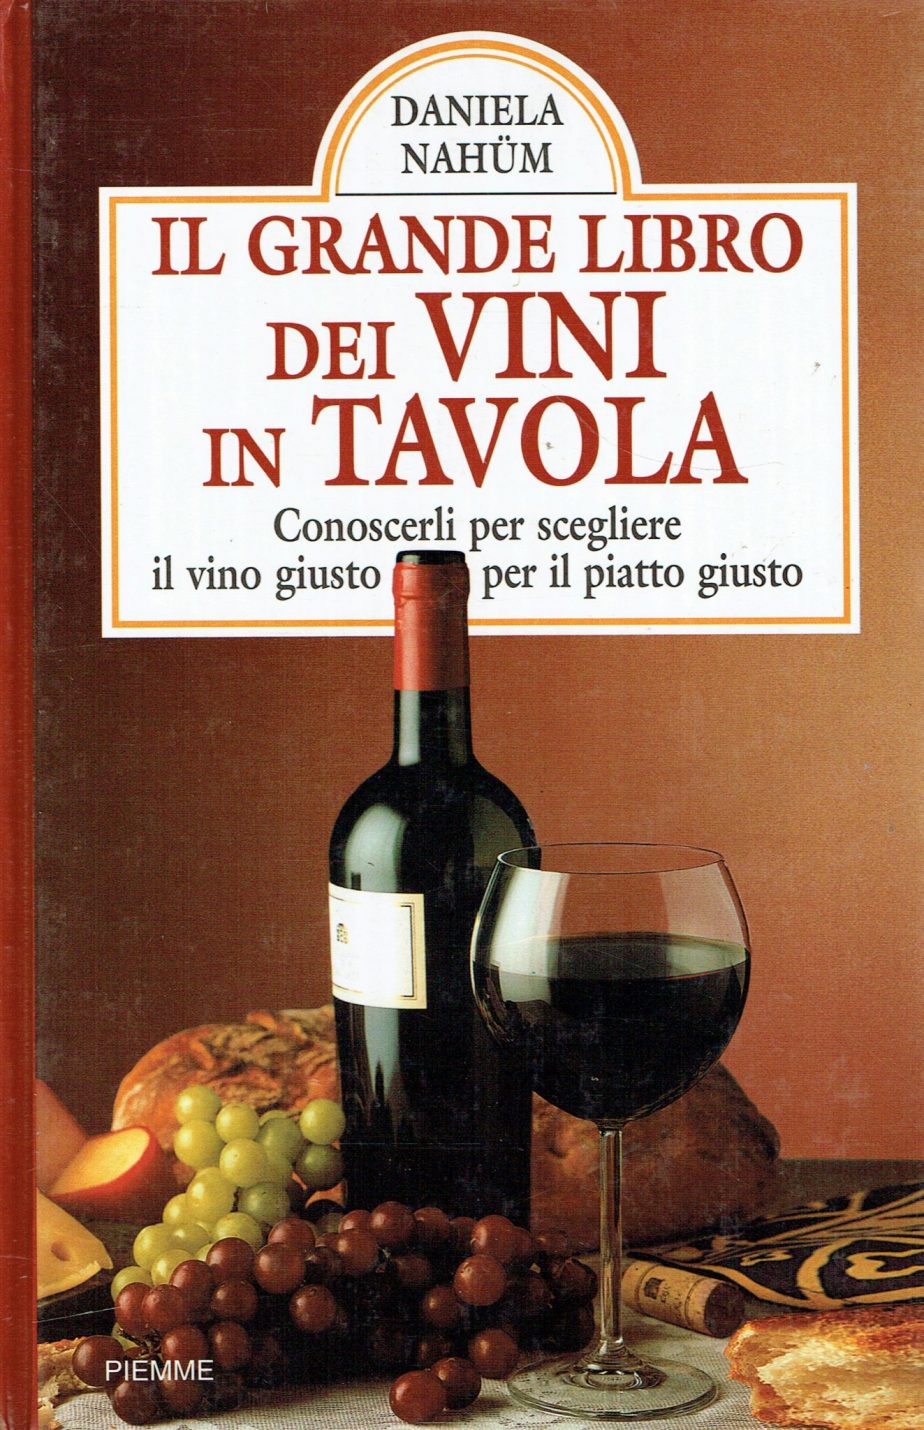 Il grande libro dei vini in tavola : conoscerli per scegliere il vino giusto per il piatto giusto